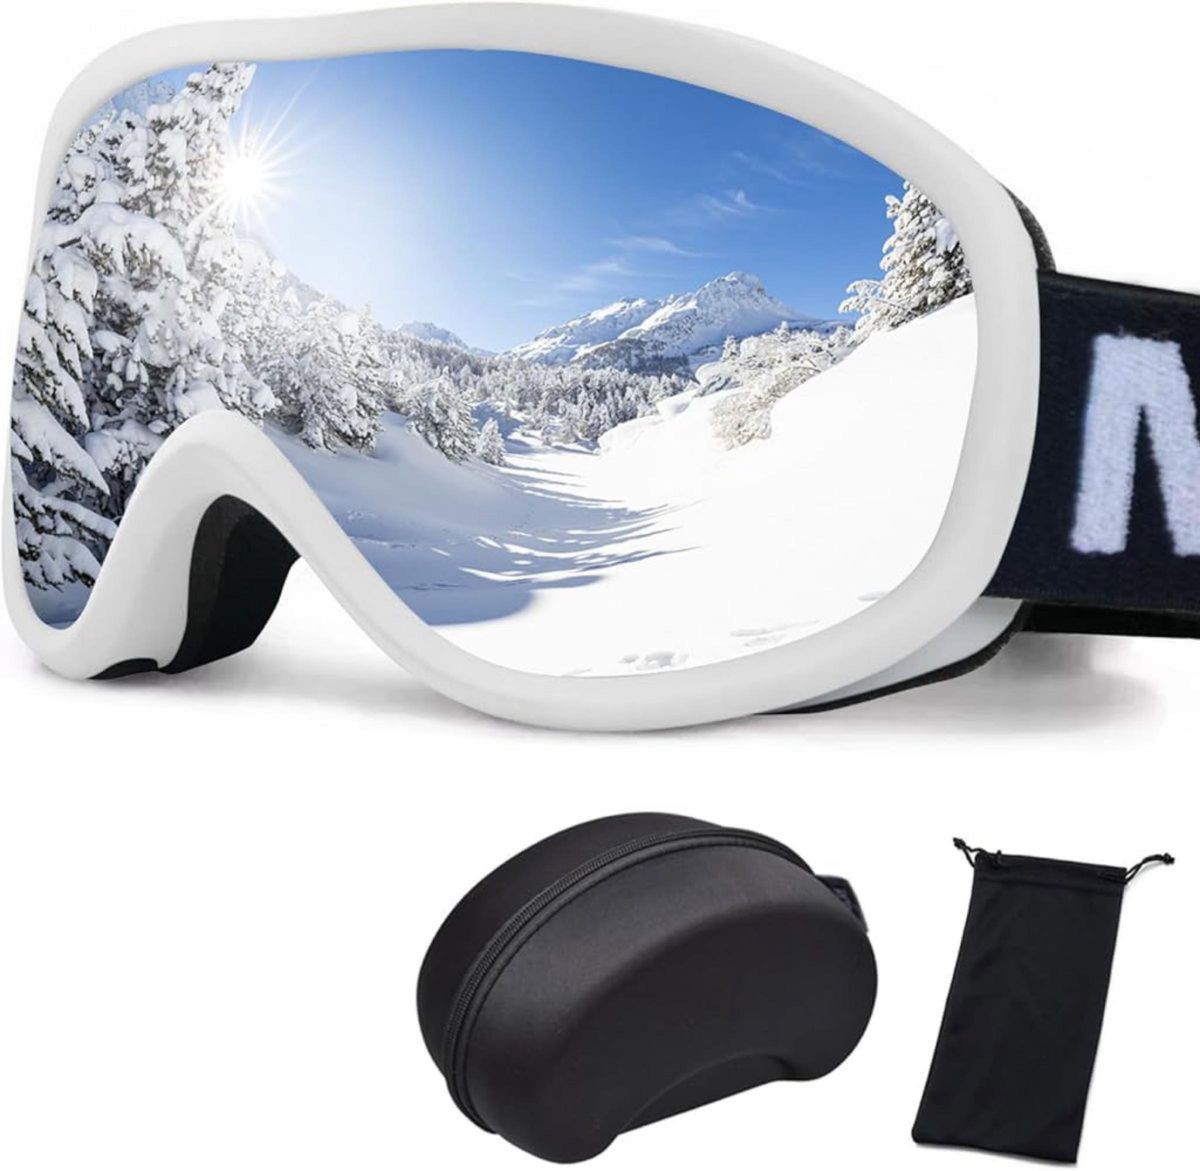 スキーゴーグル 紫外線防止 曇り止め 防塵 防雪 耐衝撃 冬 スキー スノボ